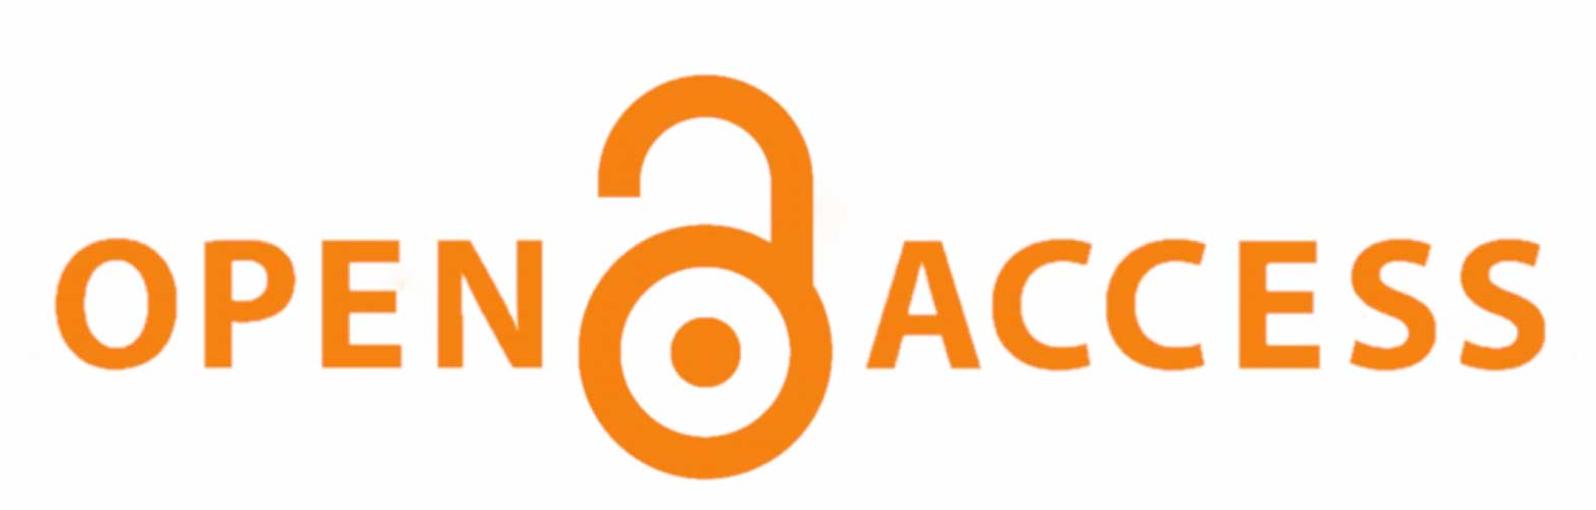 Orange Open Access logo